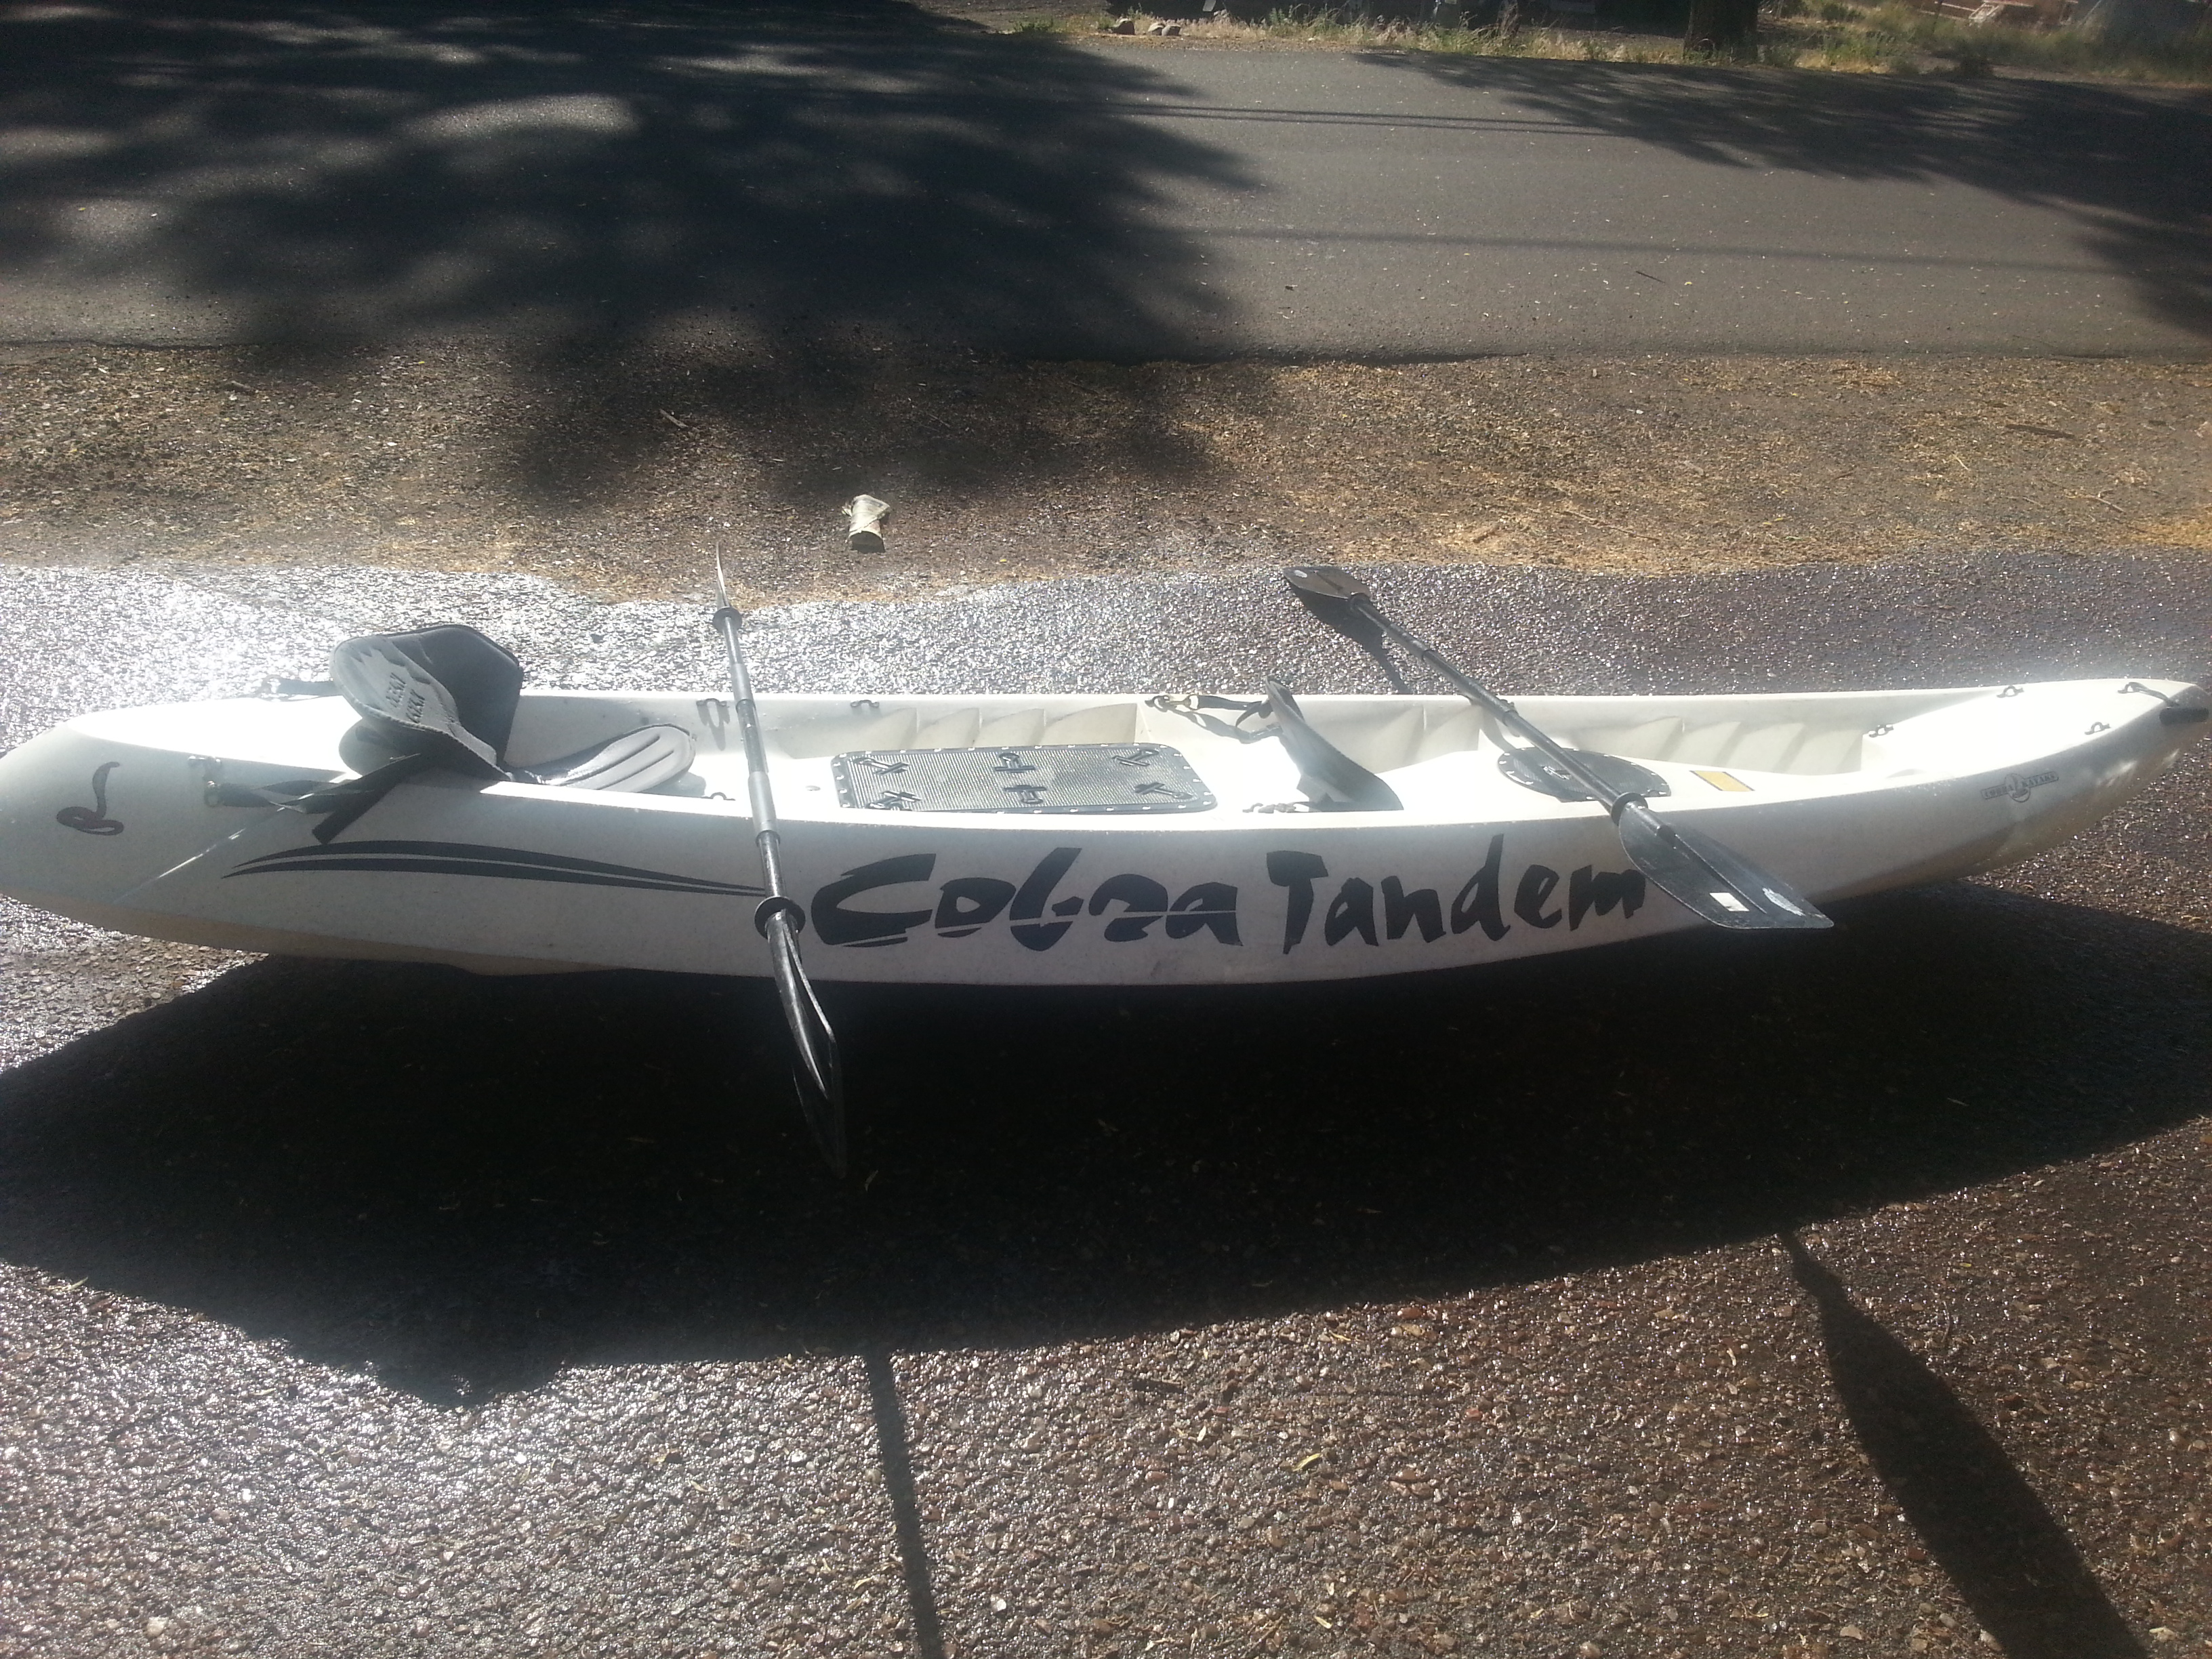 Cobra Tandem Fishing Kayak Rental